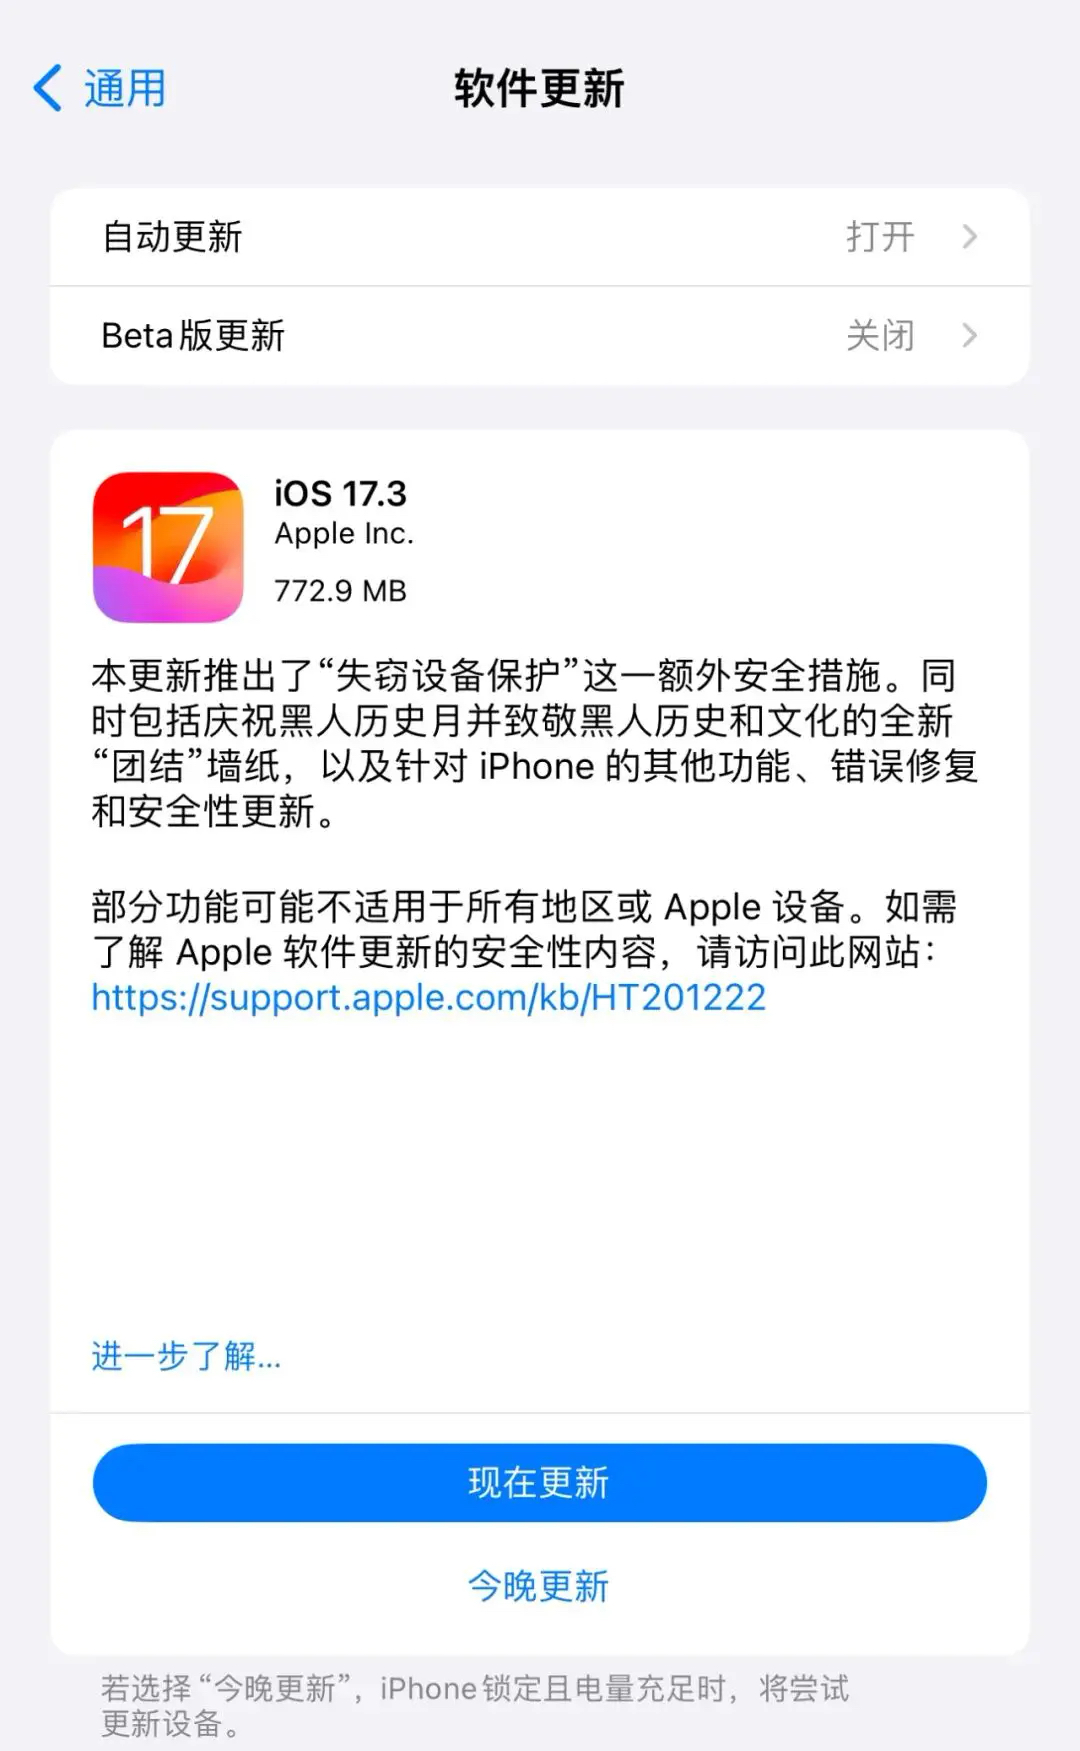 iOS 17.3 正式版发布，失窃设备保护功能上线。-手机综合交流圈子-综合技术交流-抖有网